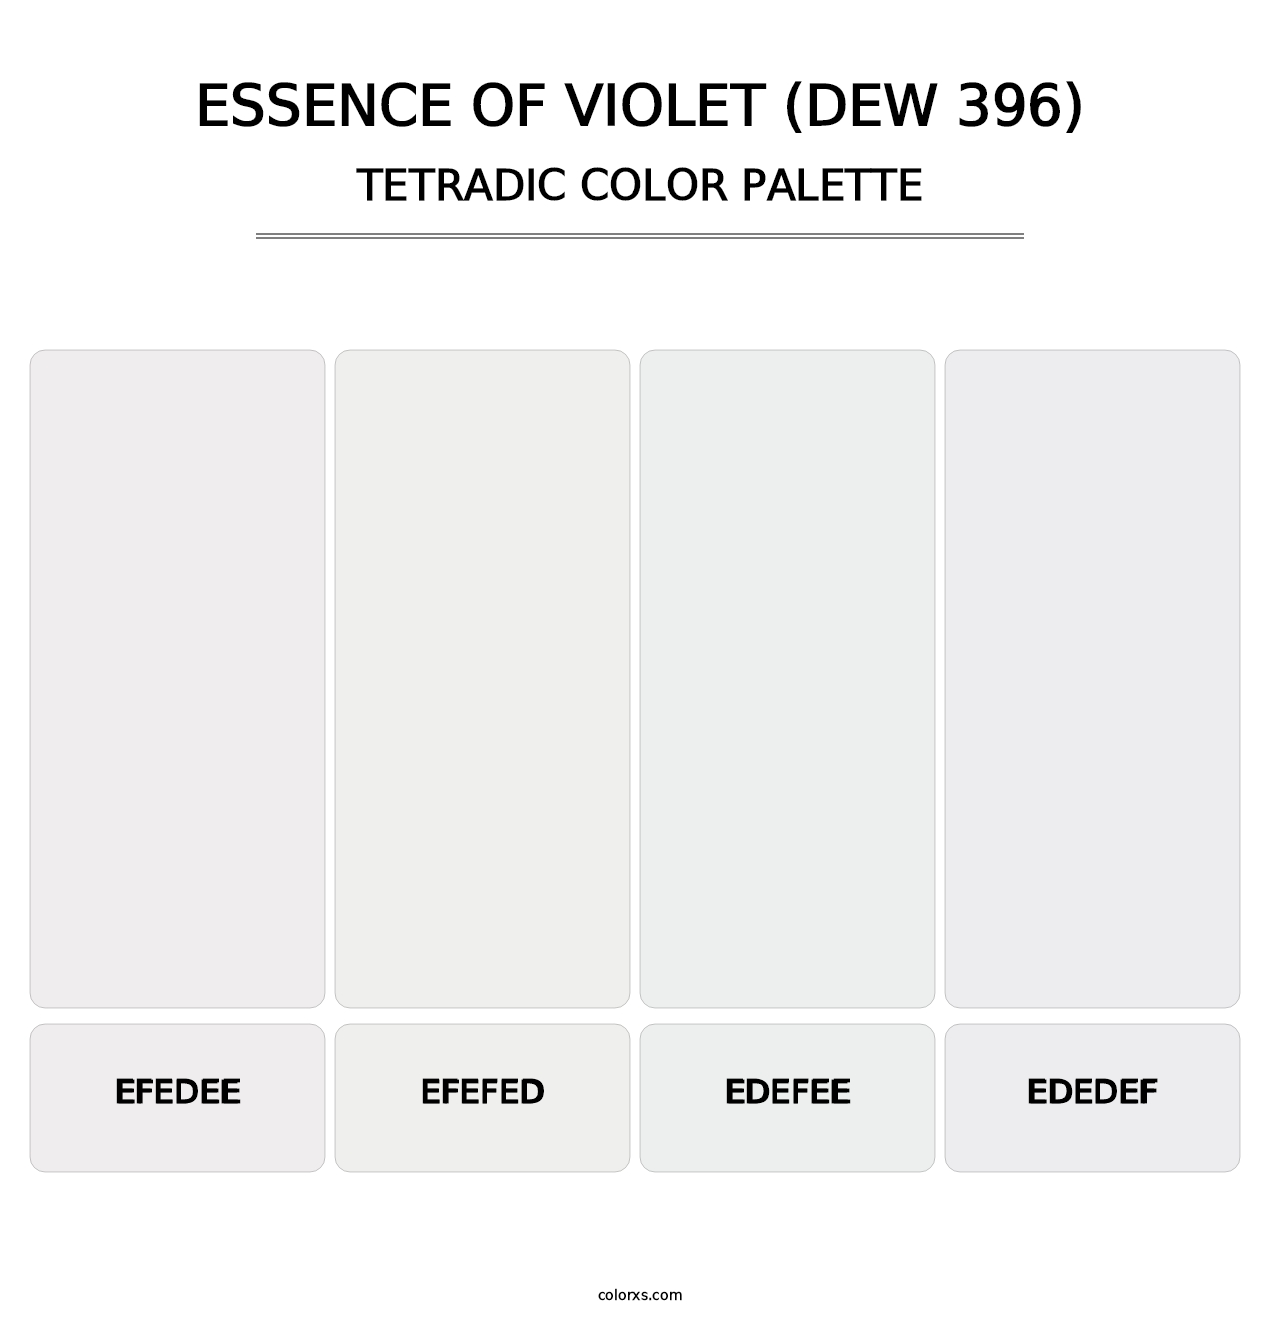 Essence of Violet (DEW 396) - Tetradic Color Palette